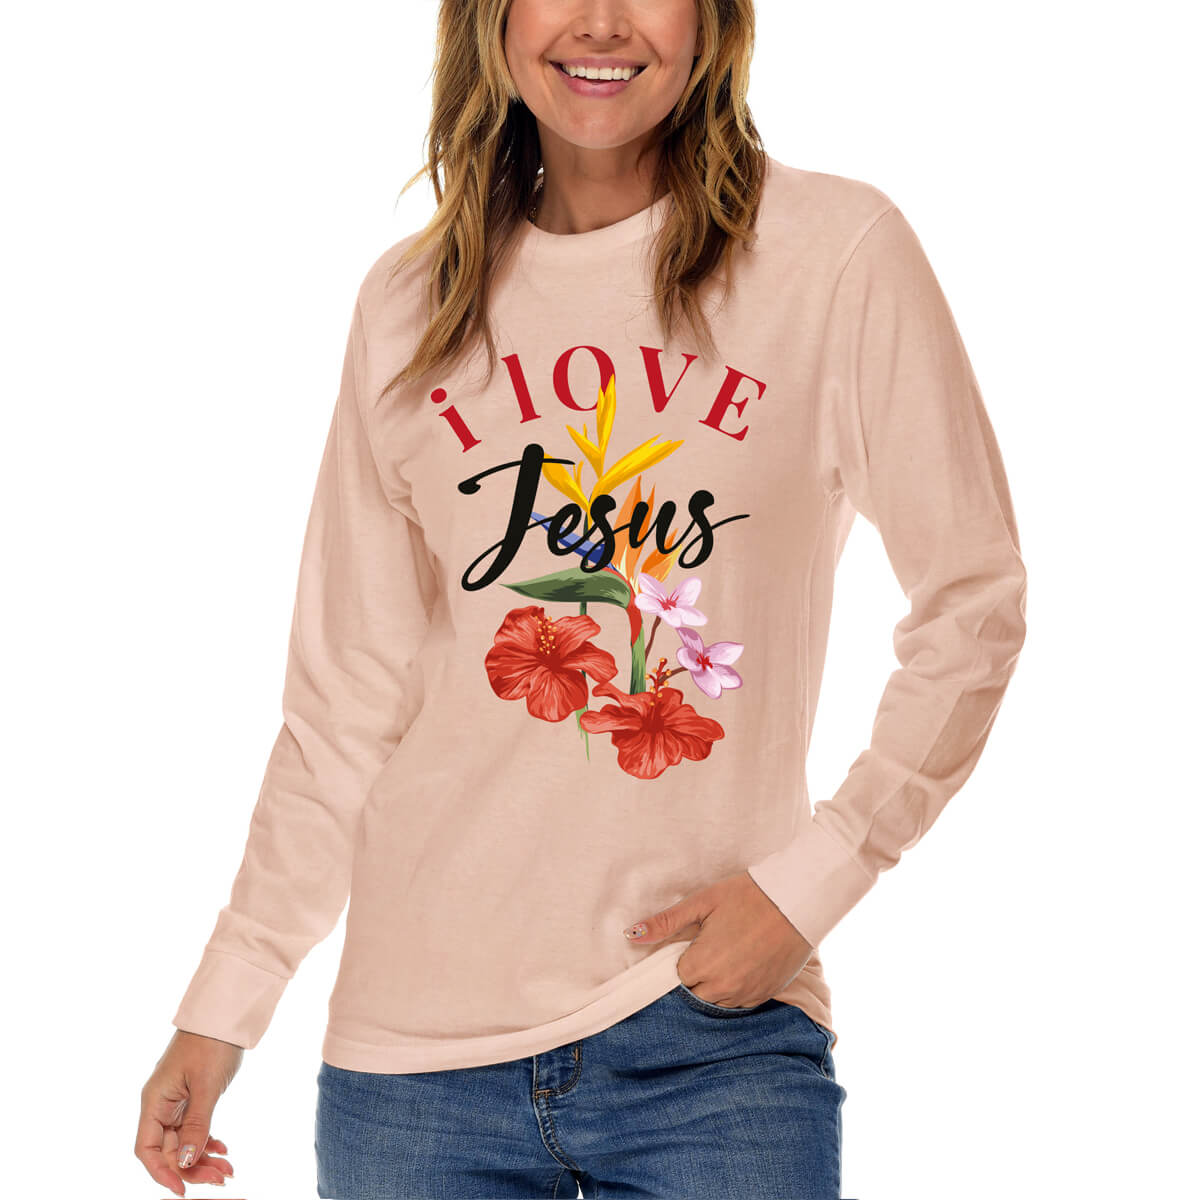 I Love Jesus Flower Long Sleeve T Shirt